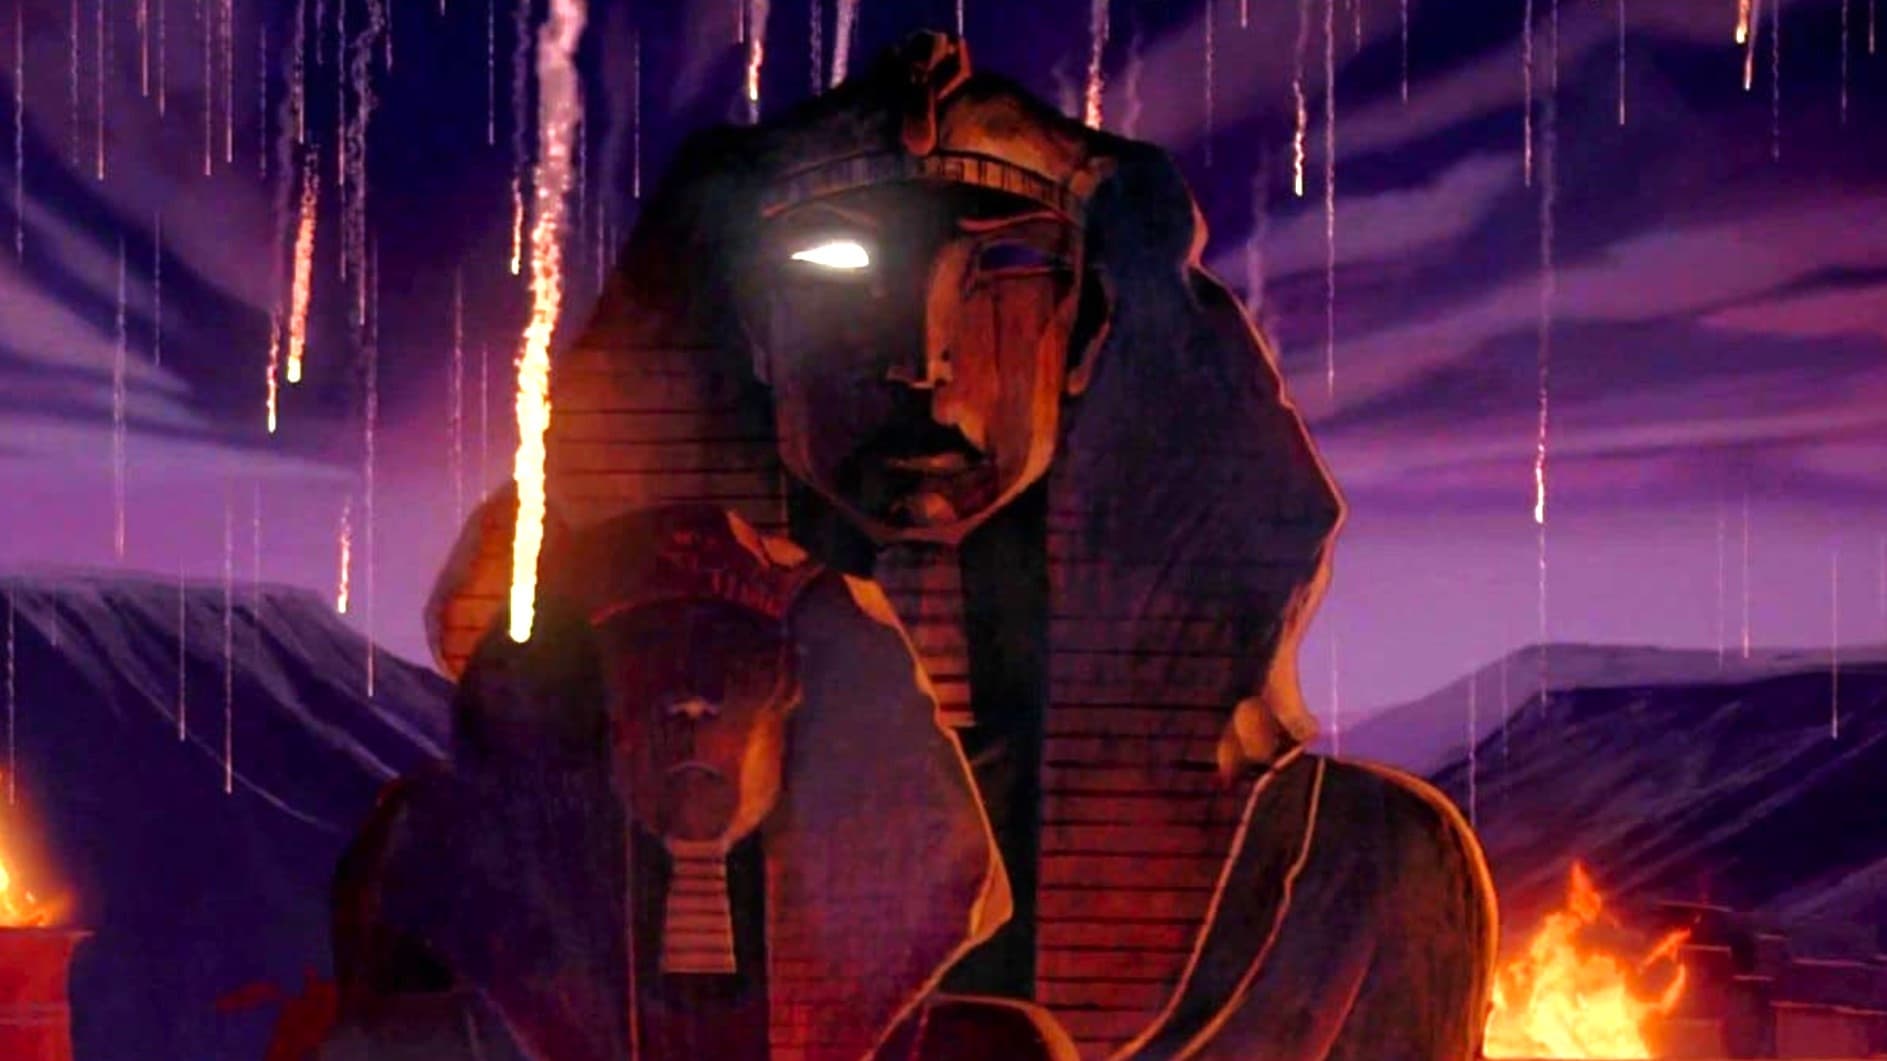 埃及王子 (1998)